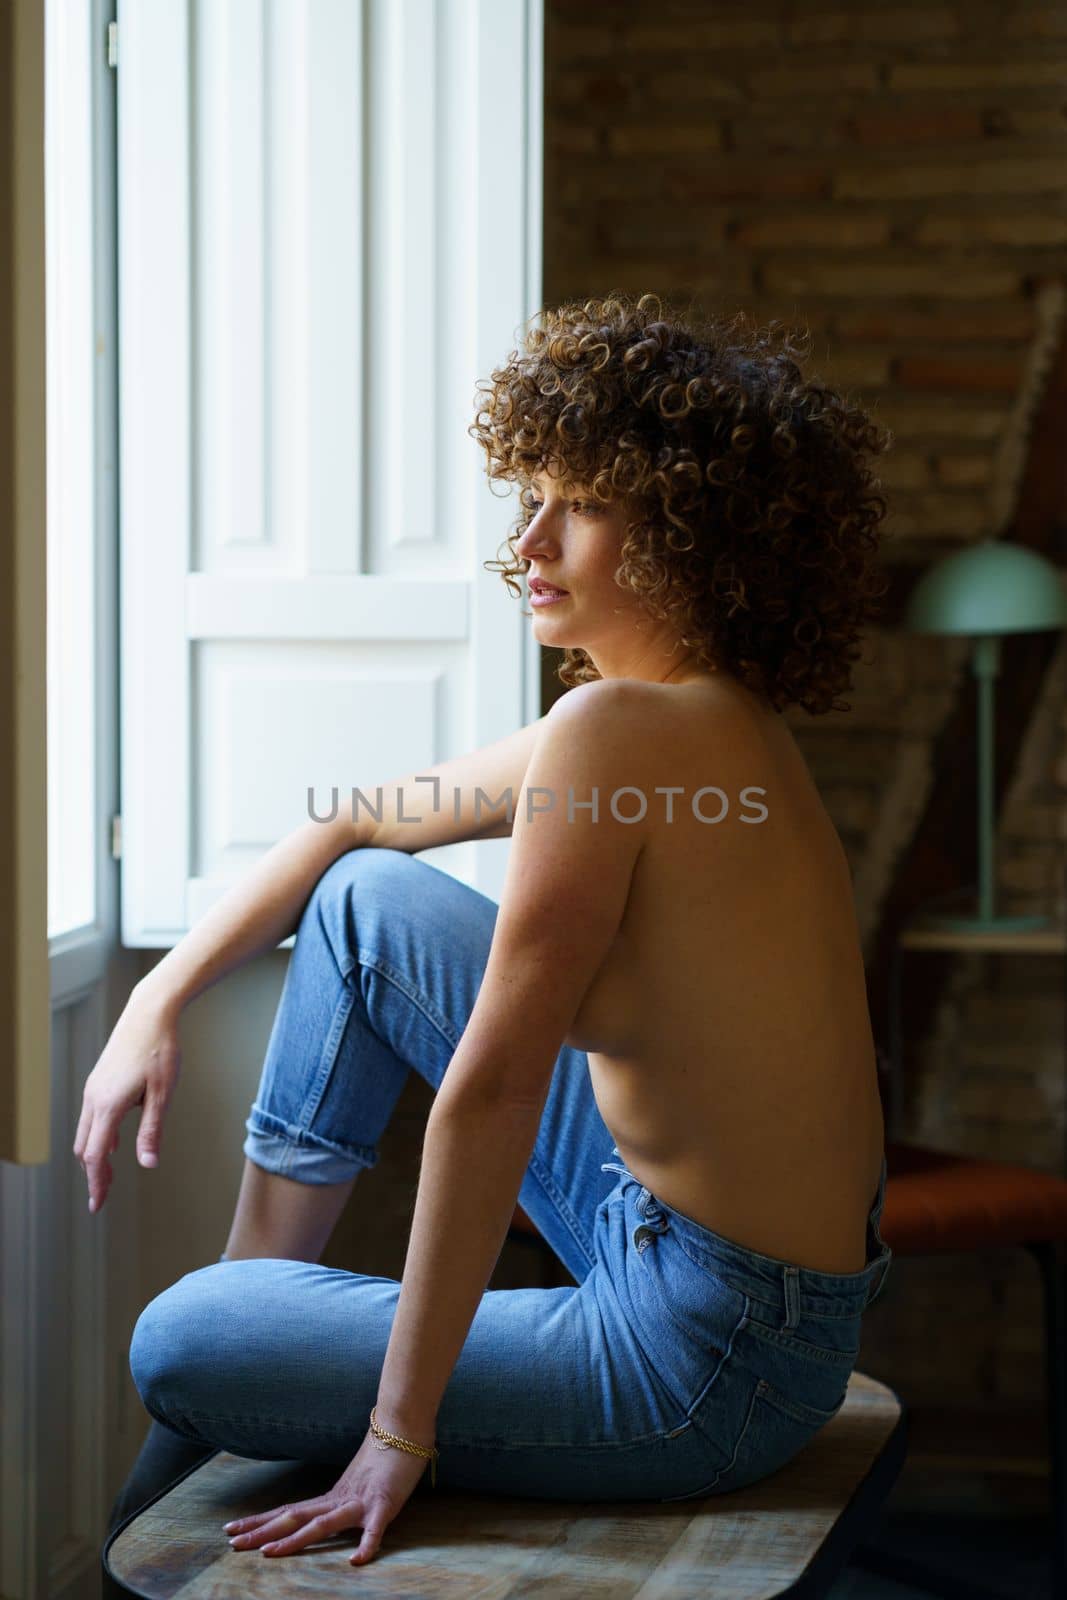 Topless woman in jeans sitting near window by javiindy